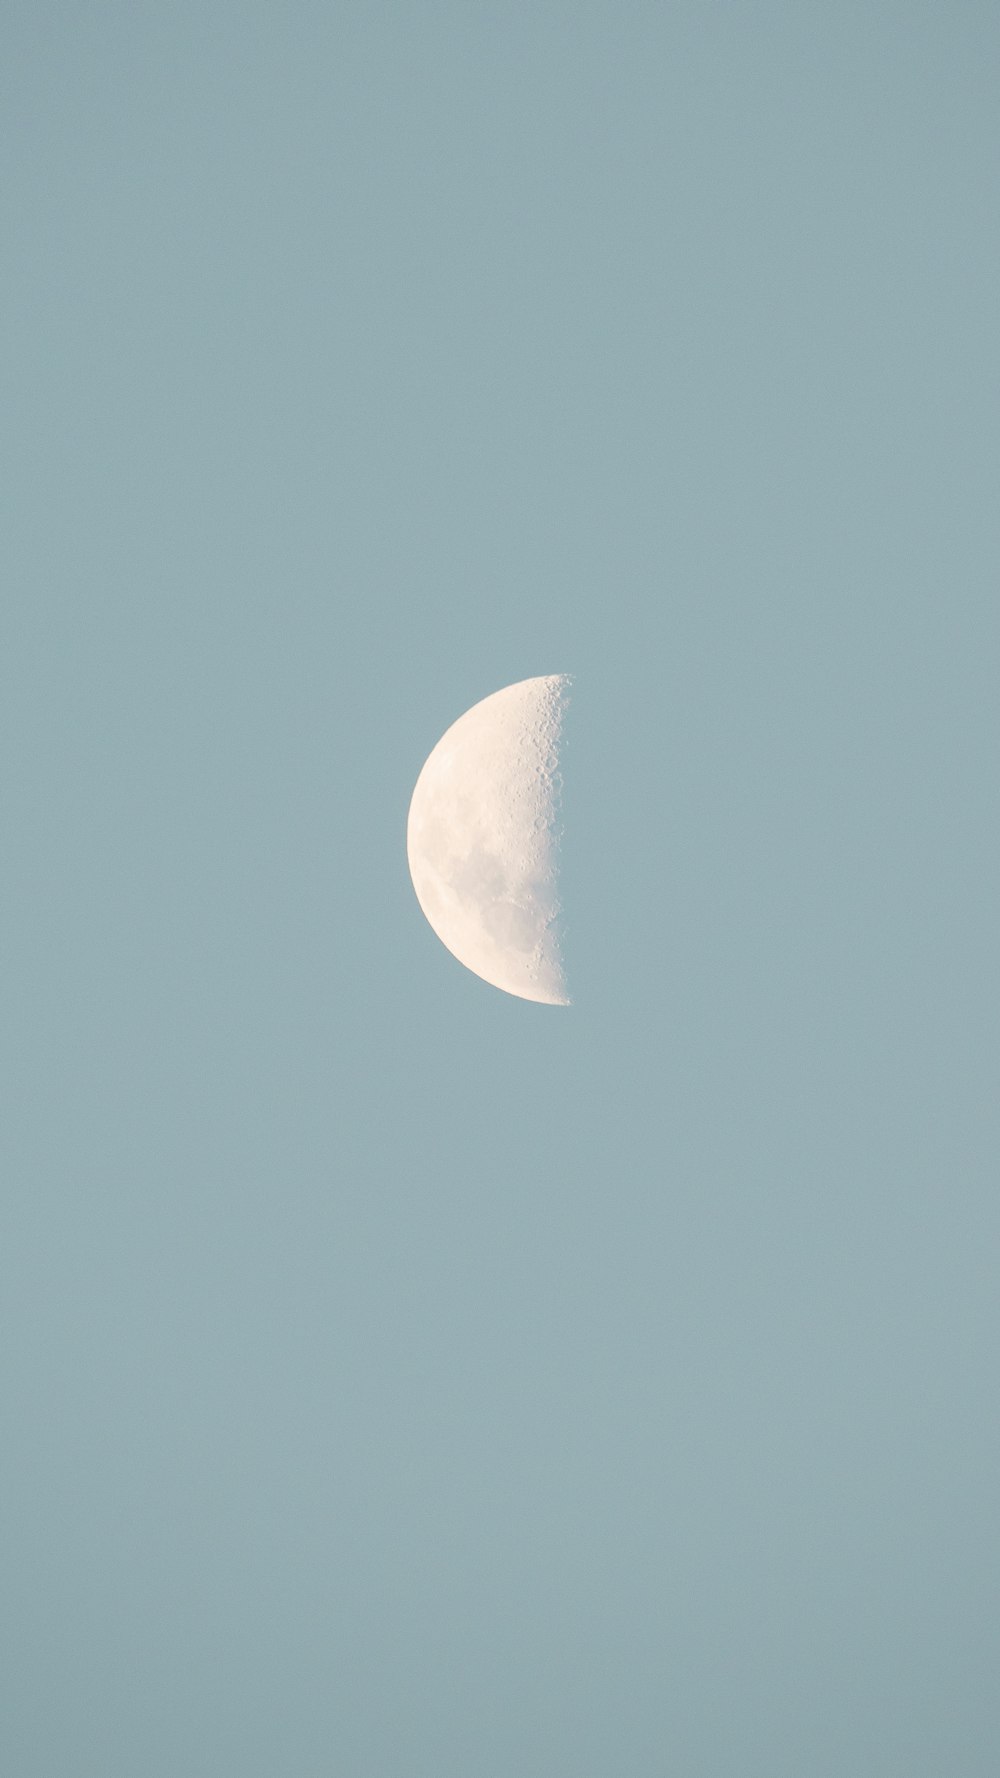 Mặt trăng: Mắt bạn sẽ đắm chìm vào hình ảnh mặt trăng tuyệt đẹp trong đêm đầy mộng mơ. Hãy chiêm ngưỡng sự lãng mạn của vầng trăng bạc trên không trung và cùng tận hưởng khoảnh khắc thư giãn đầy tình cảm.